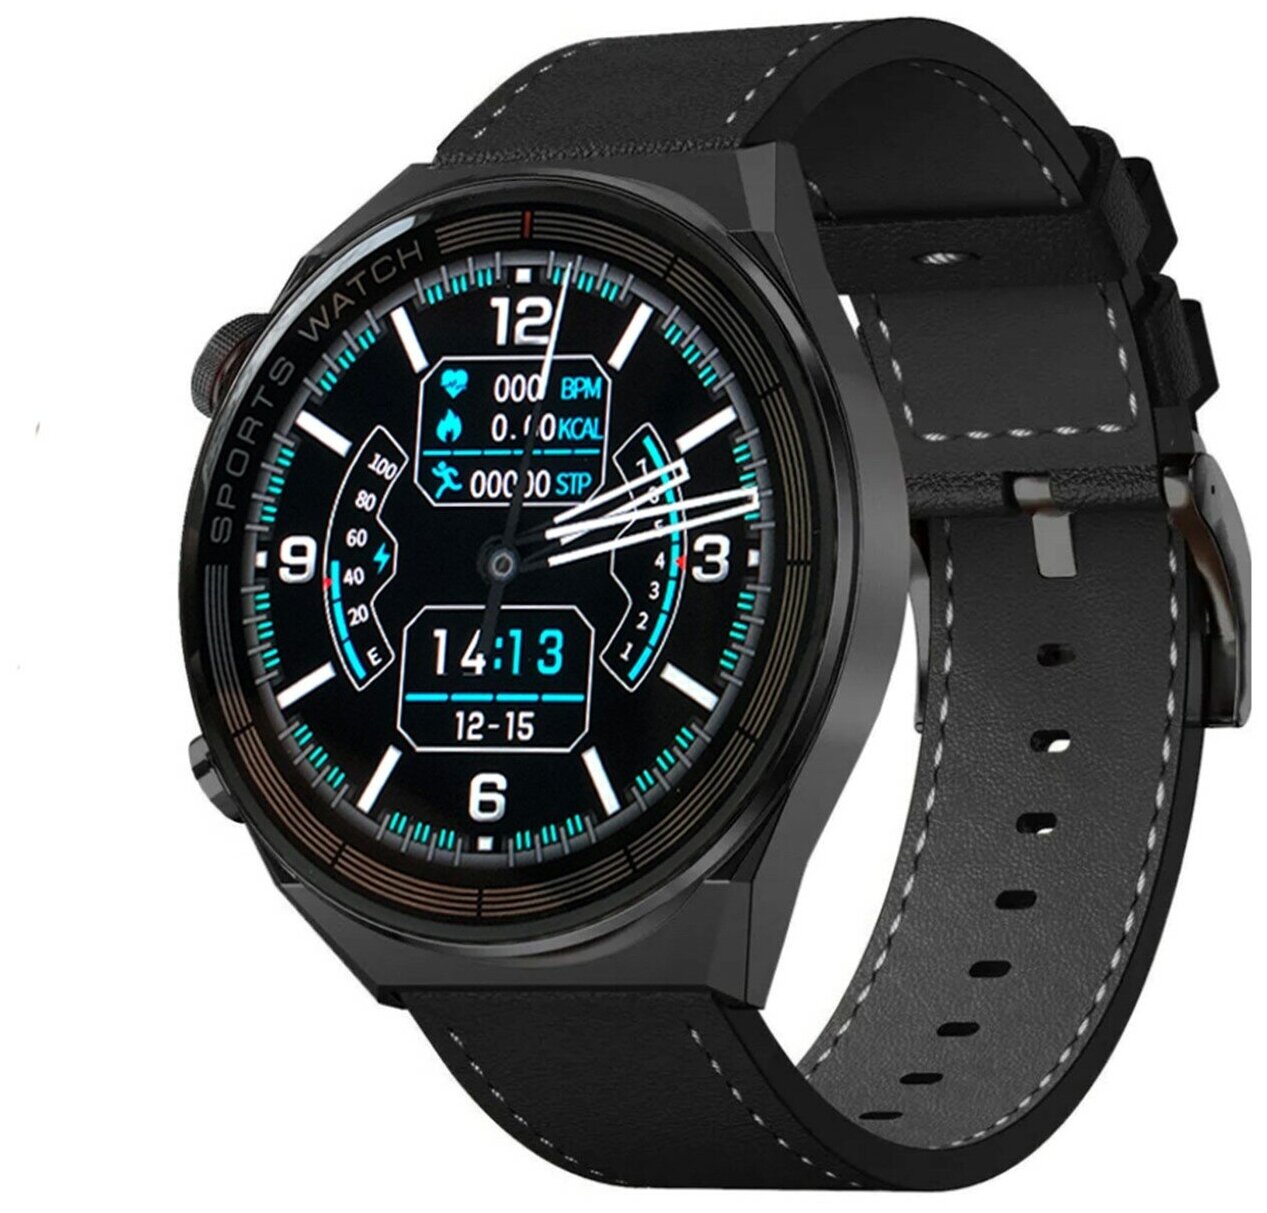 Умные часы Smart Watch GT3 смарт часы мужские с NFC 1,5 дюйма TFT HD IPS, черные